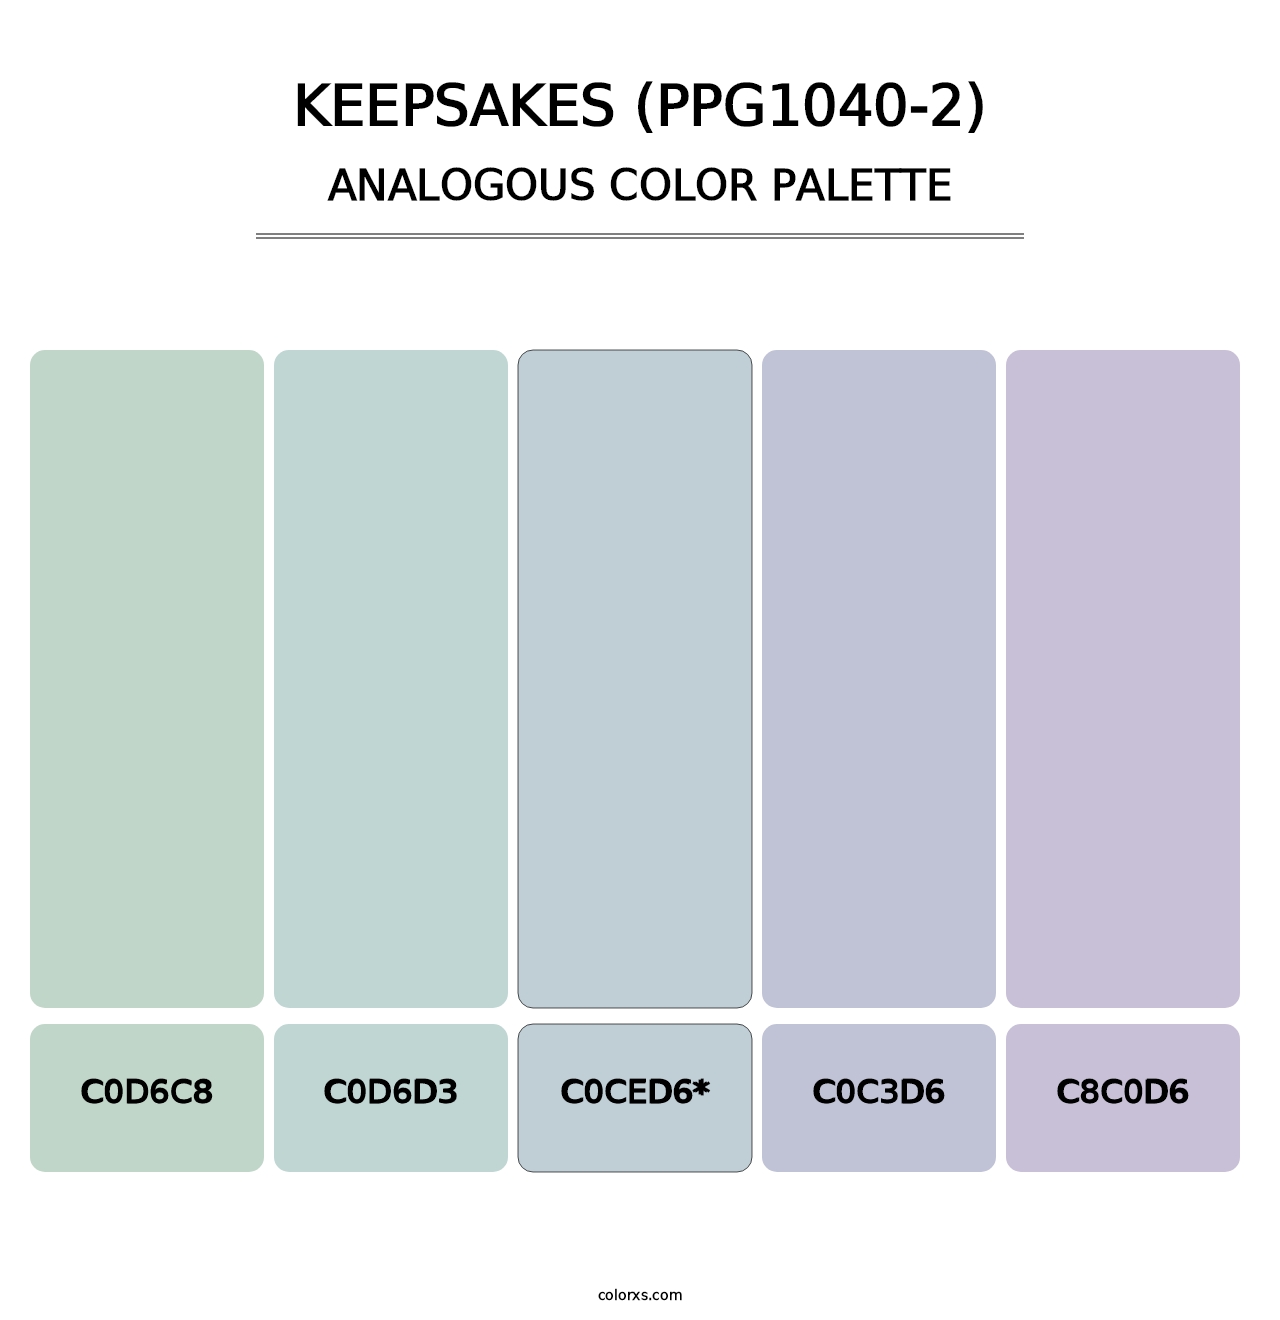 Keepsakes (PPG1040-2) - Analogous Color Palette